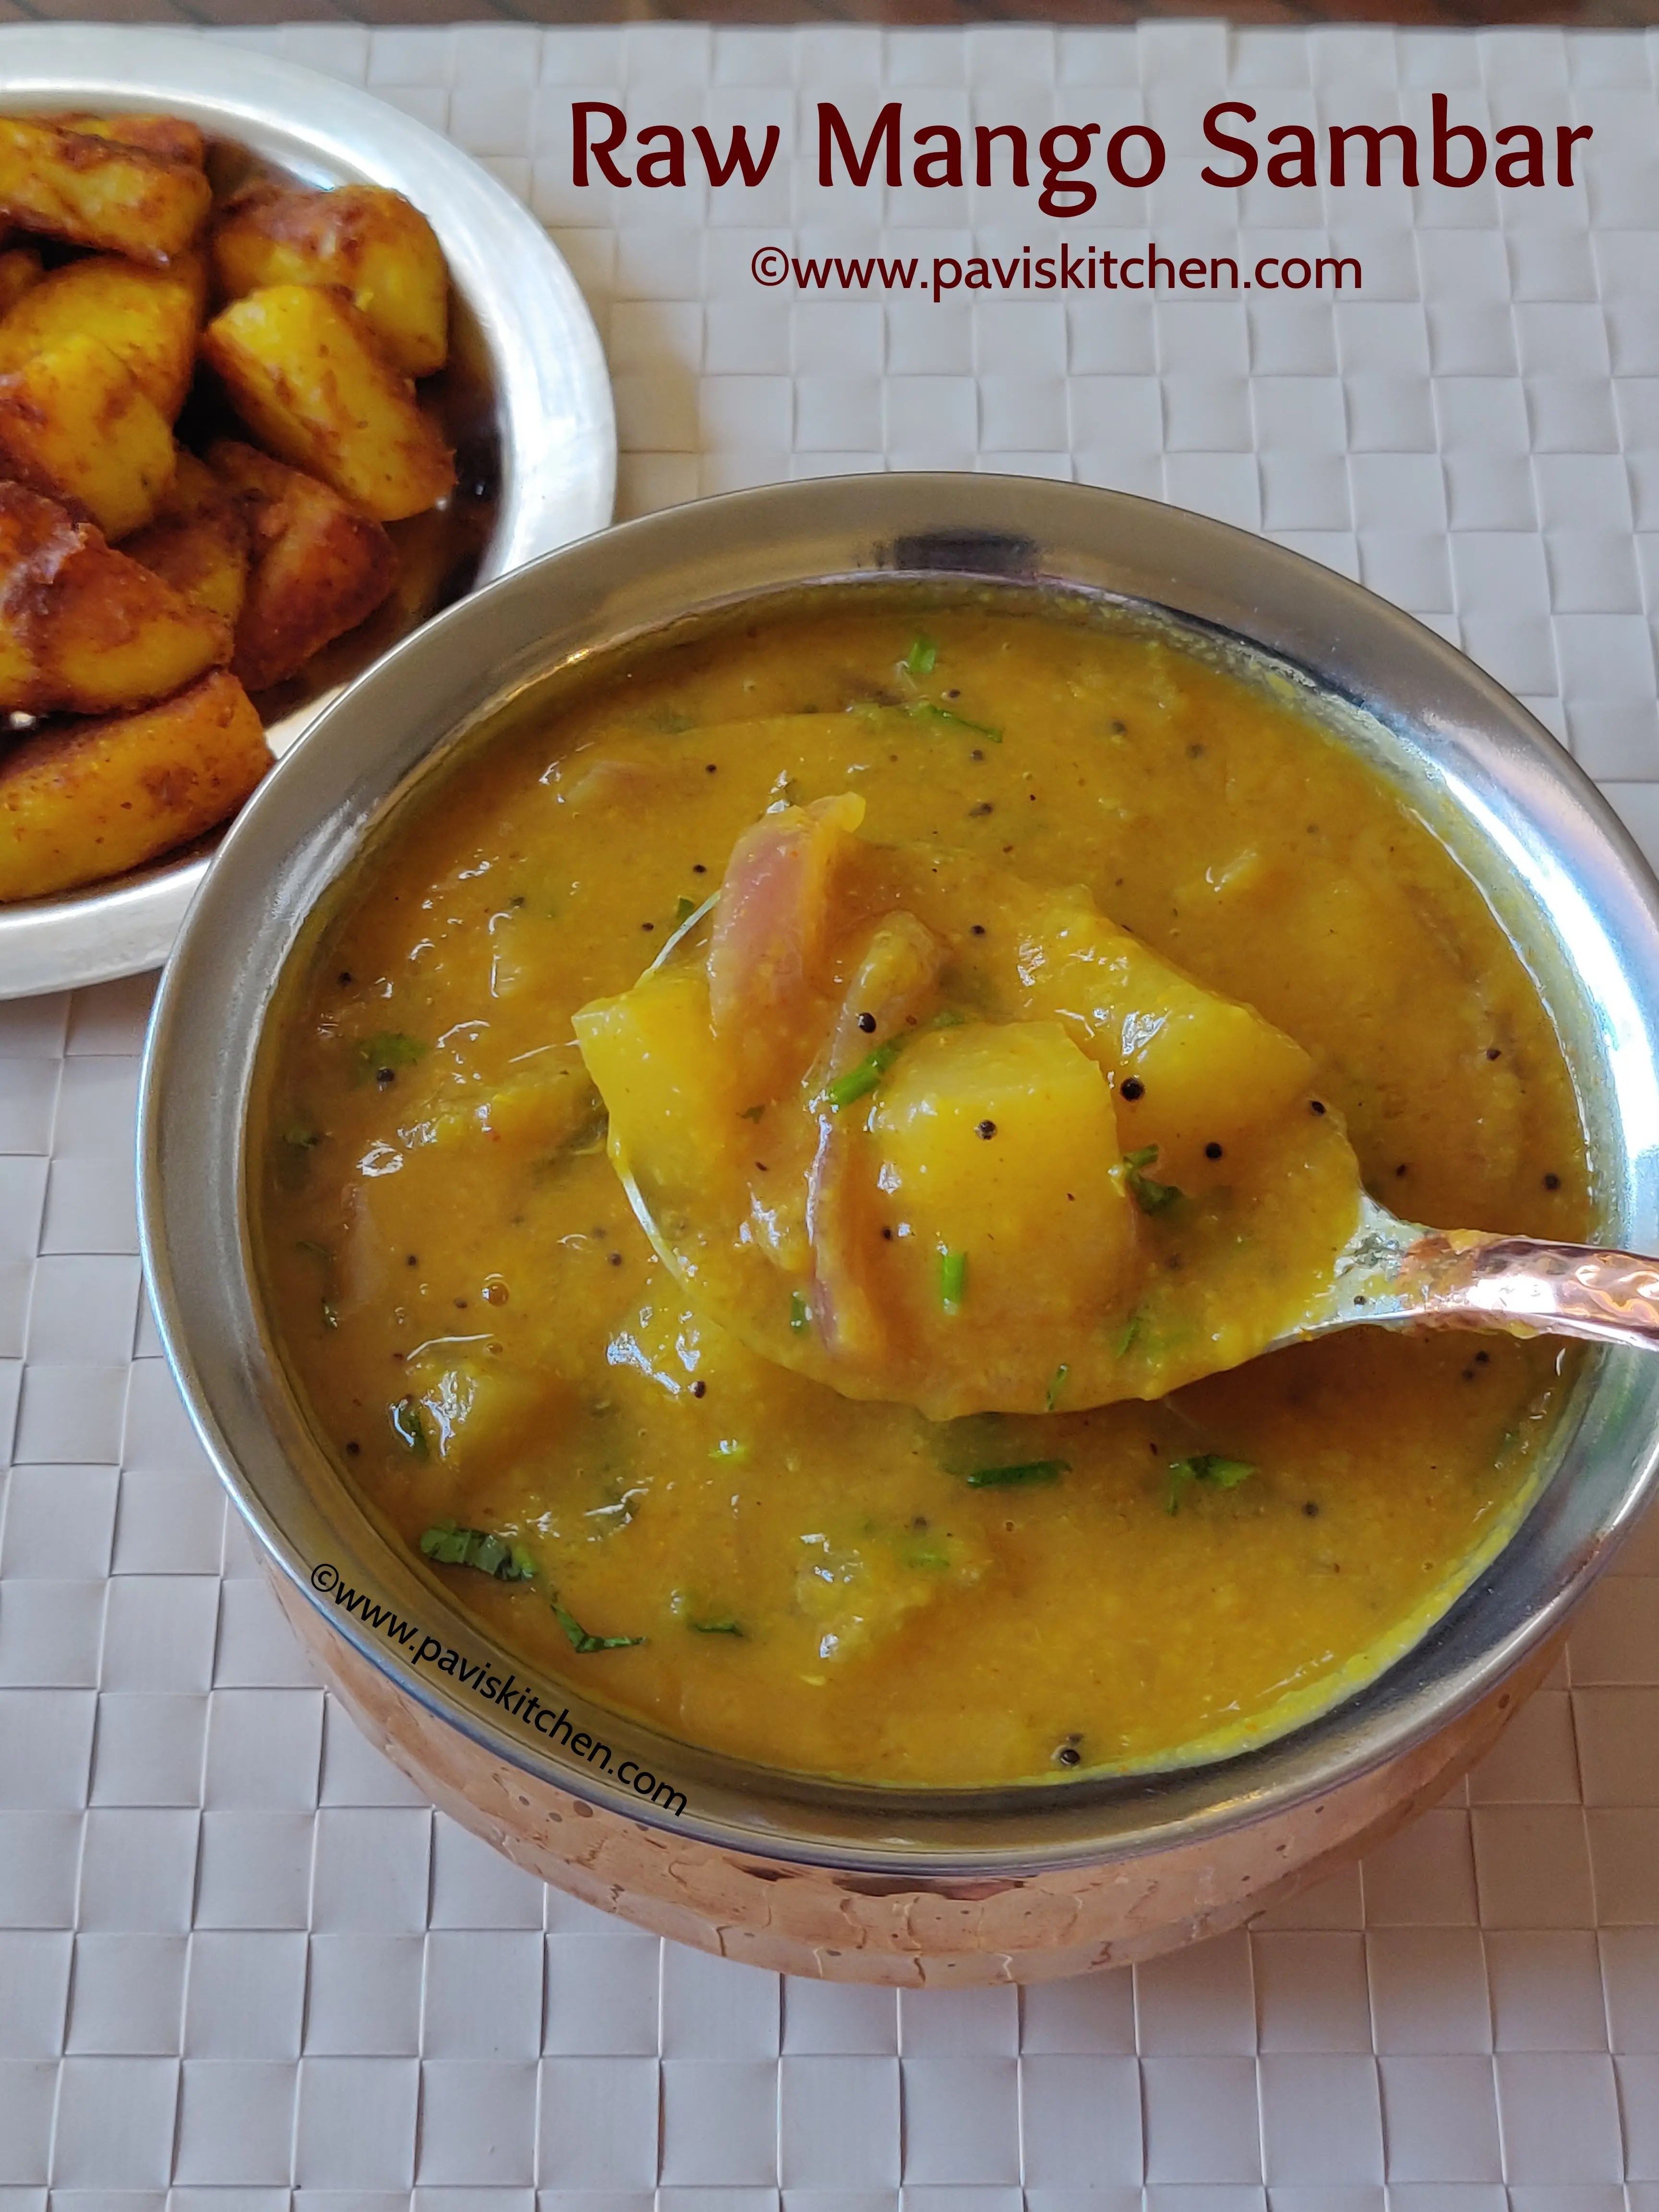 Mango sambar recipe | Raw mango sambar | South Indian mangai sambar